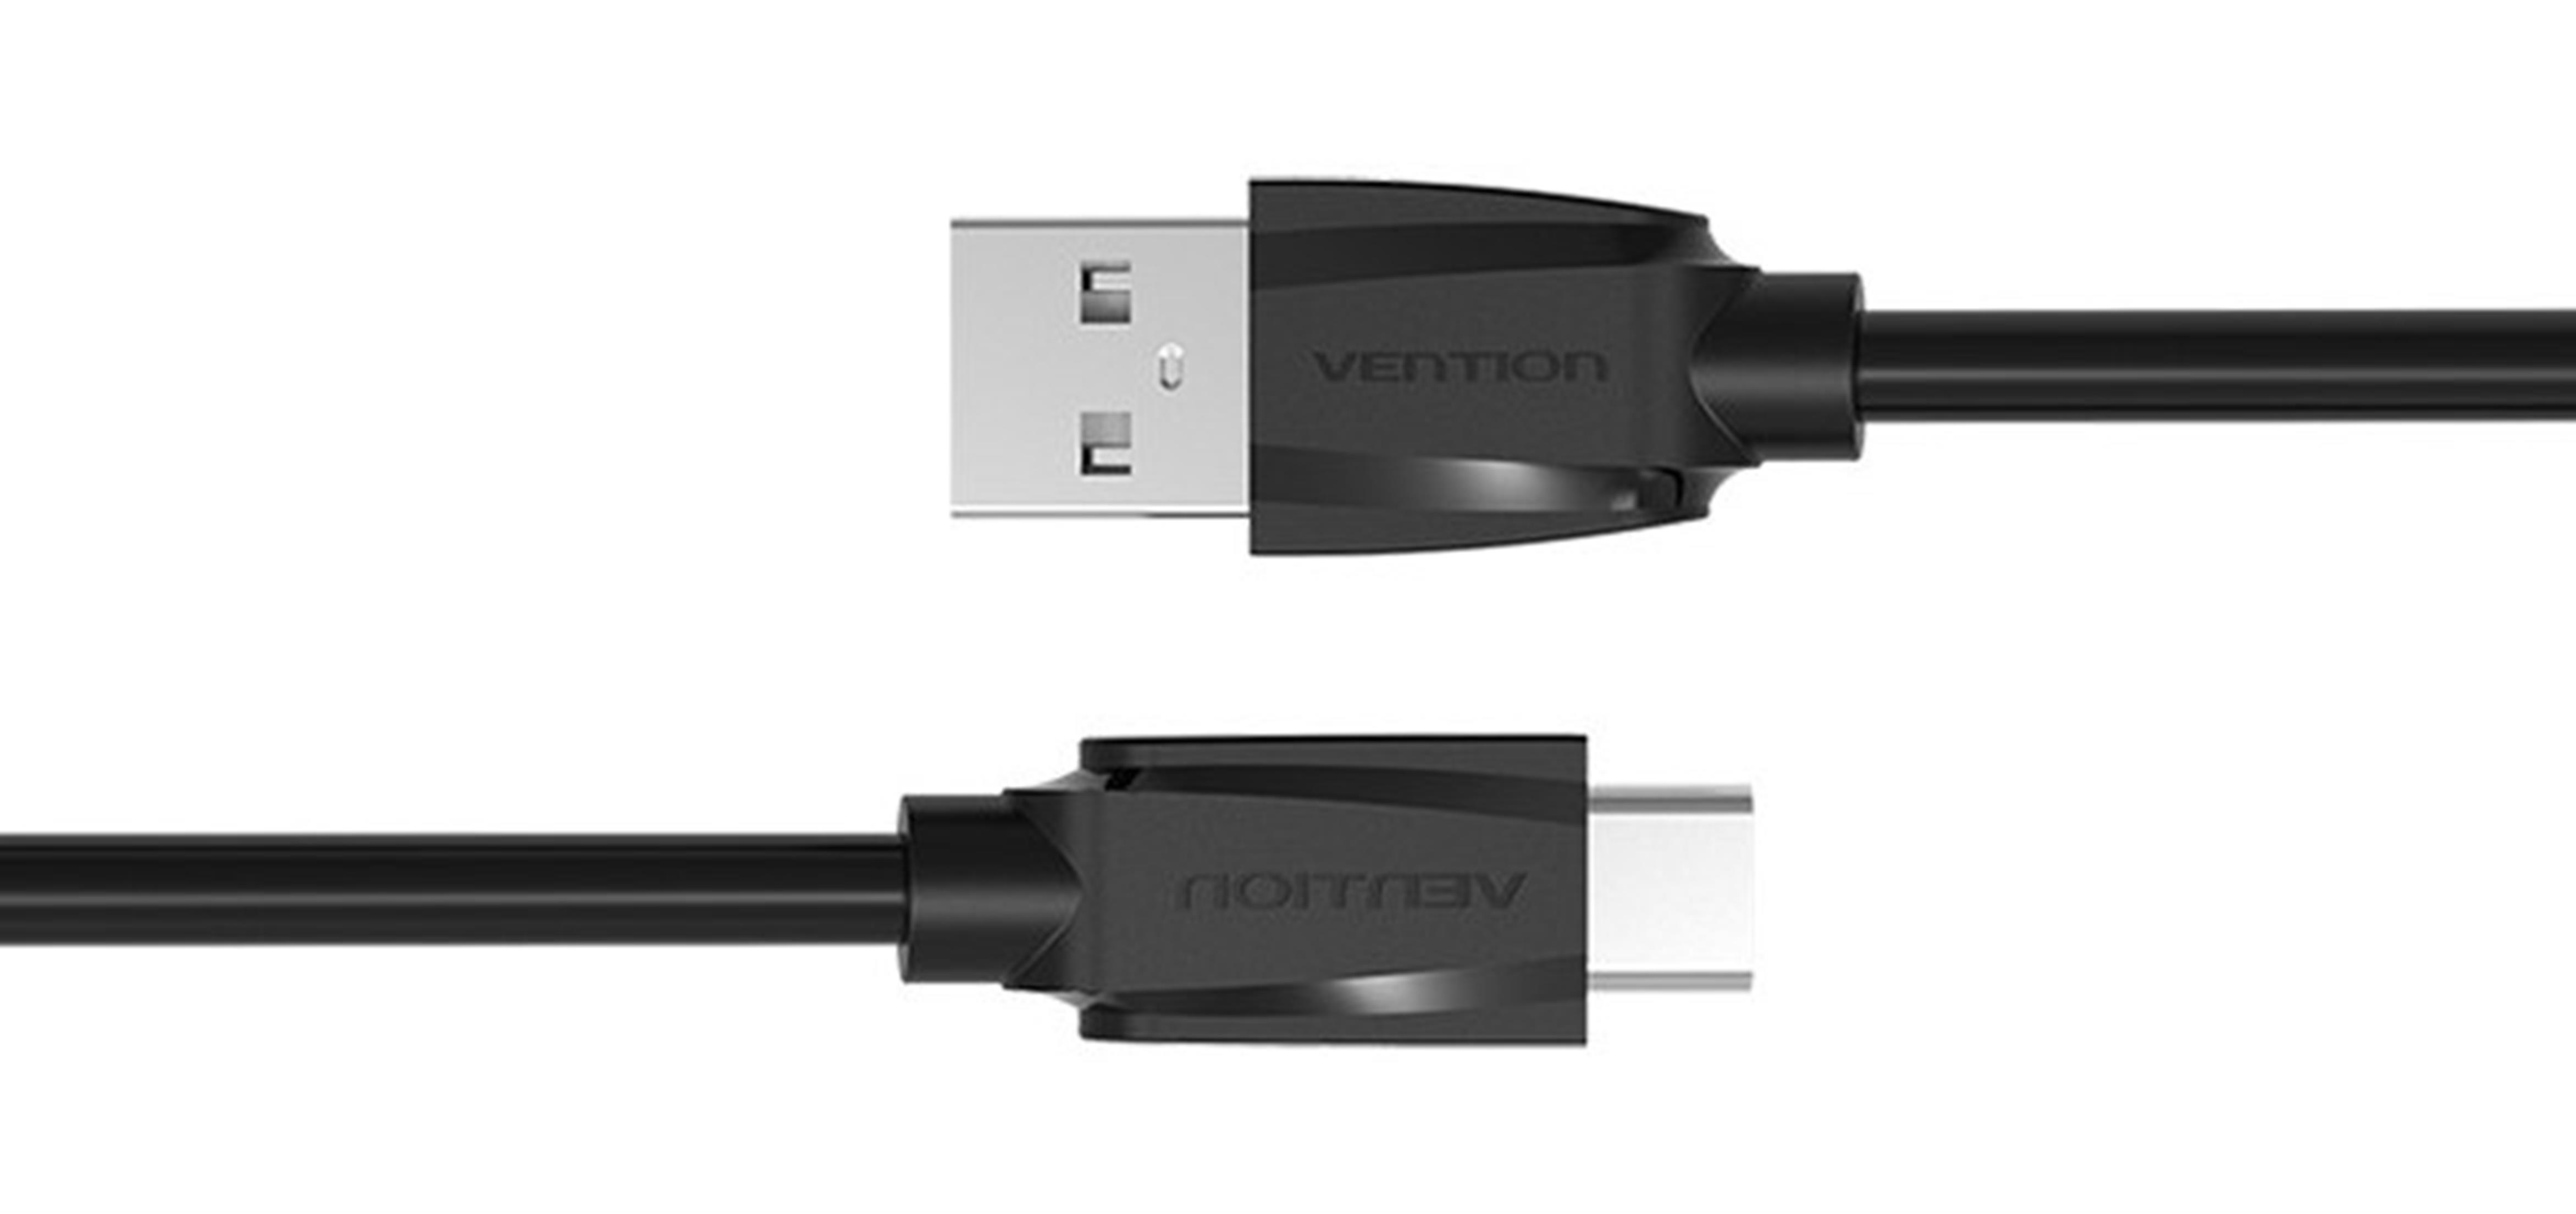 Cáp USB 2.0 sang USB 2.0 Type C truyền dữ liệu và sạc lõi thuần đồng bọc nhôm chống nhiễu VENTION VAS-A46-B100 1m (Đen) - Hàng nhập khẩu